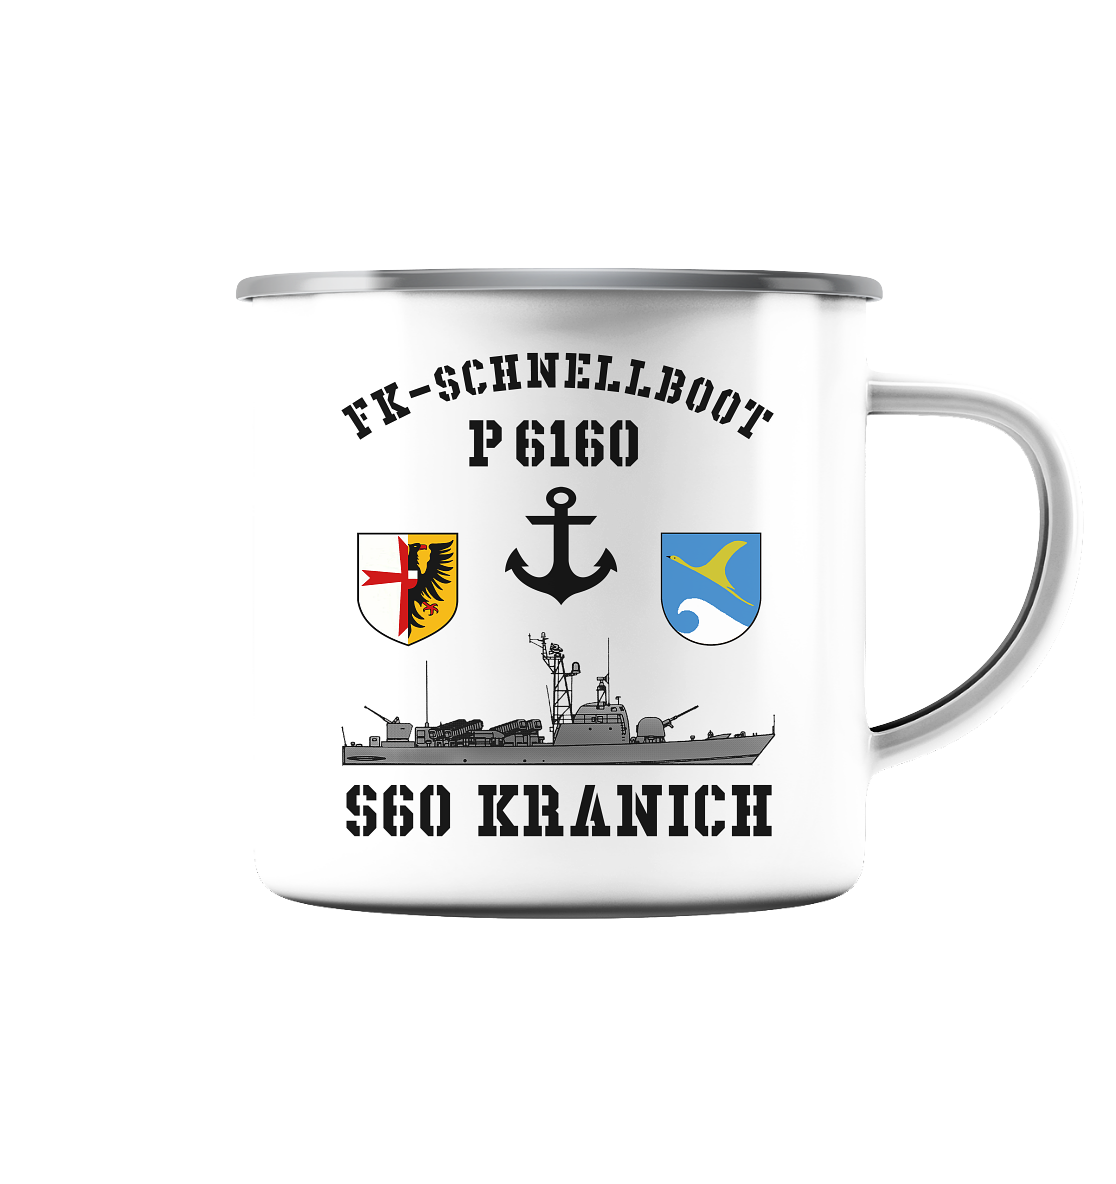 FK-Schnellboot P6160 S60 KRANICH Bofors - Emaille Tasse (Silber)